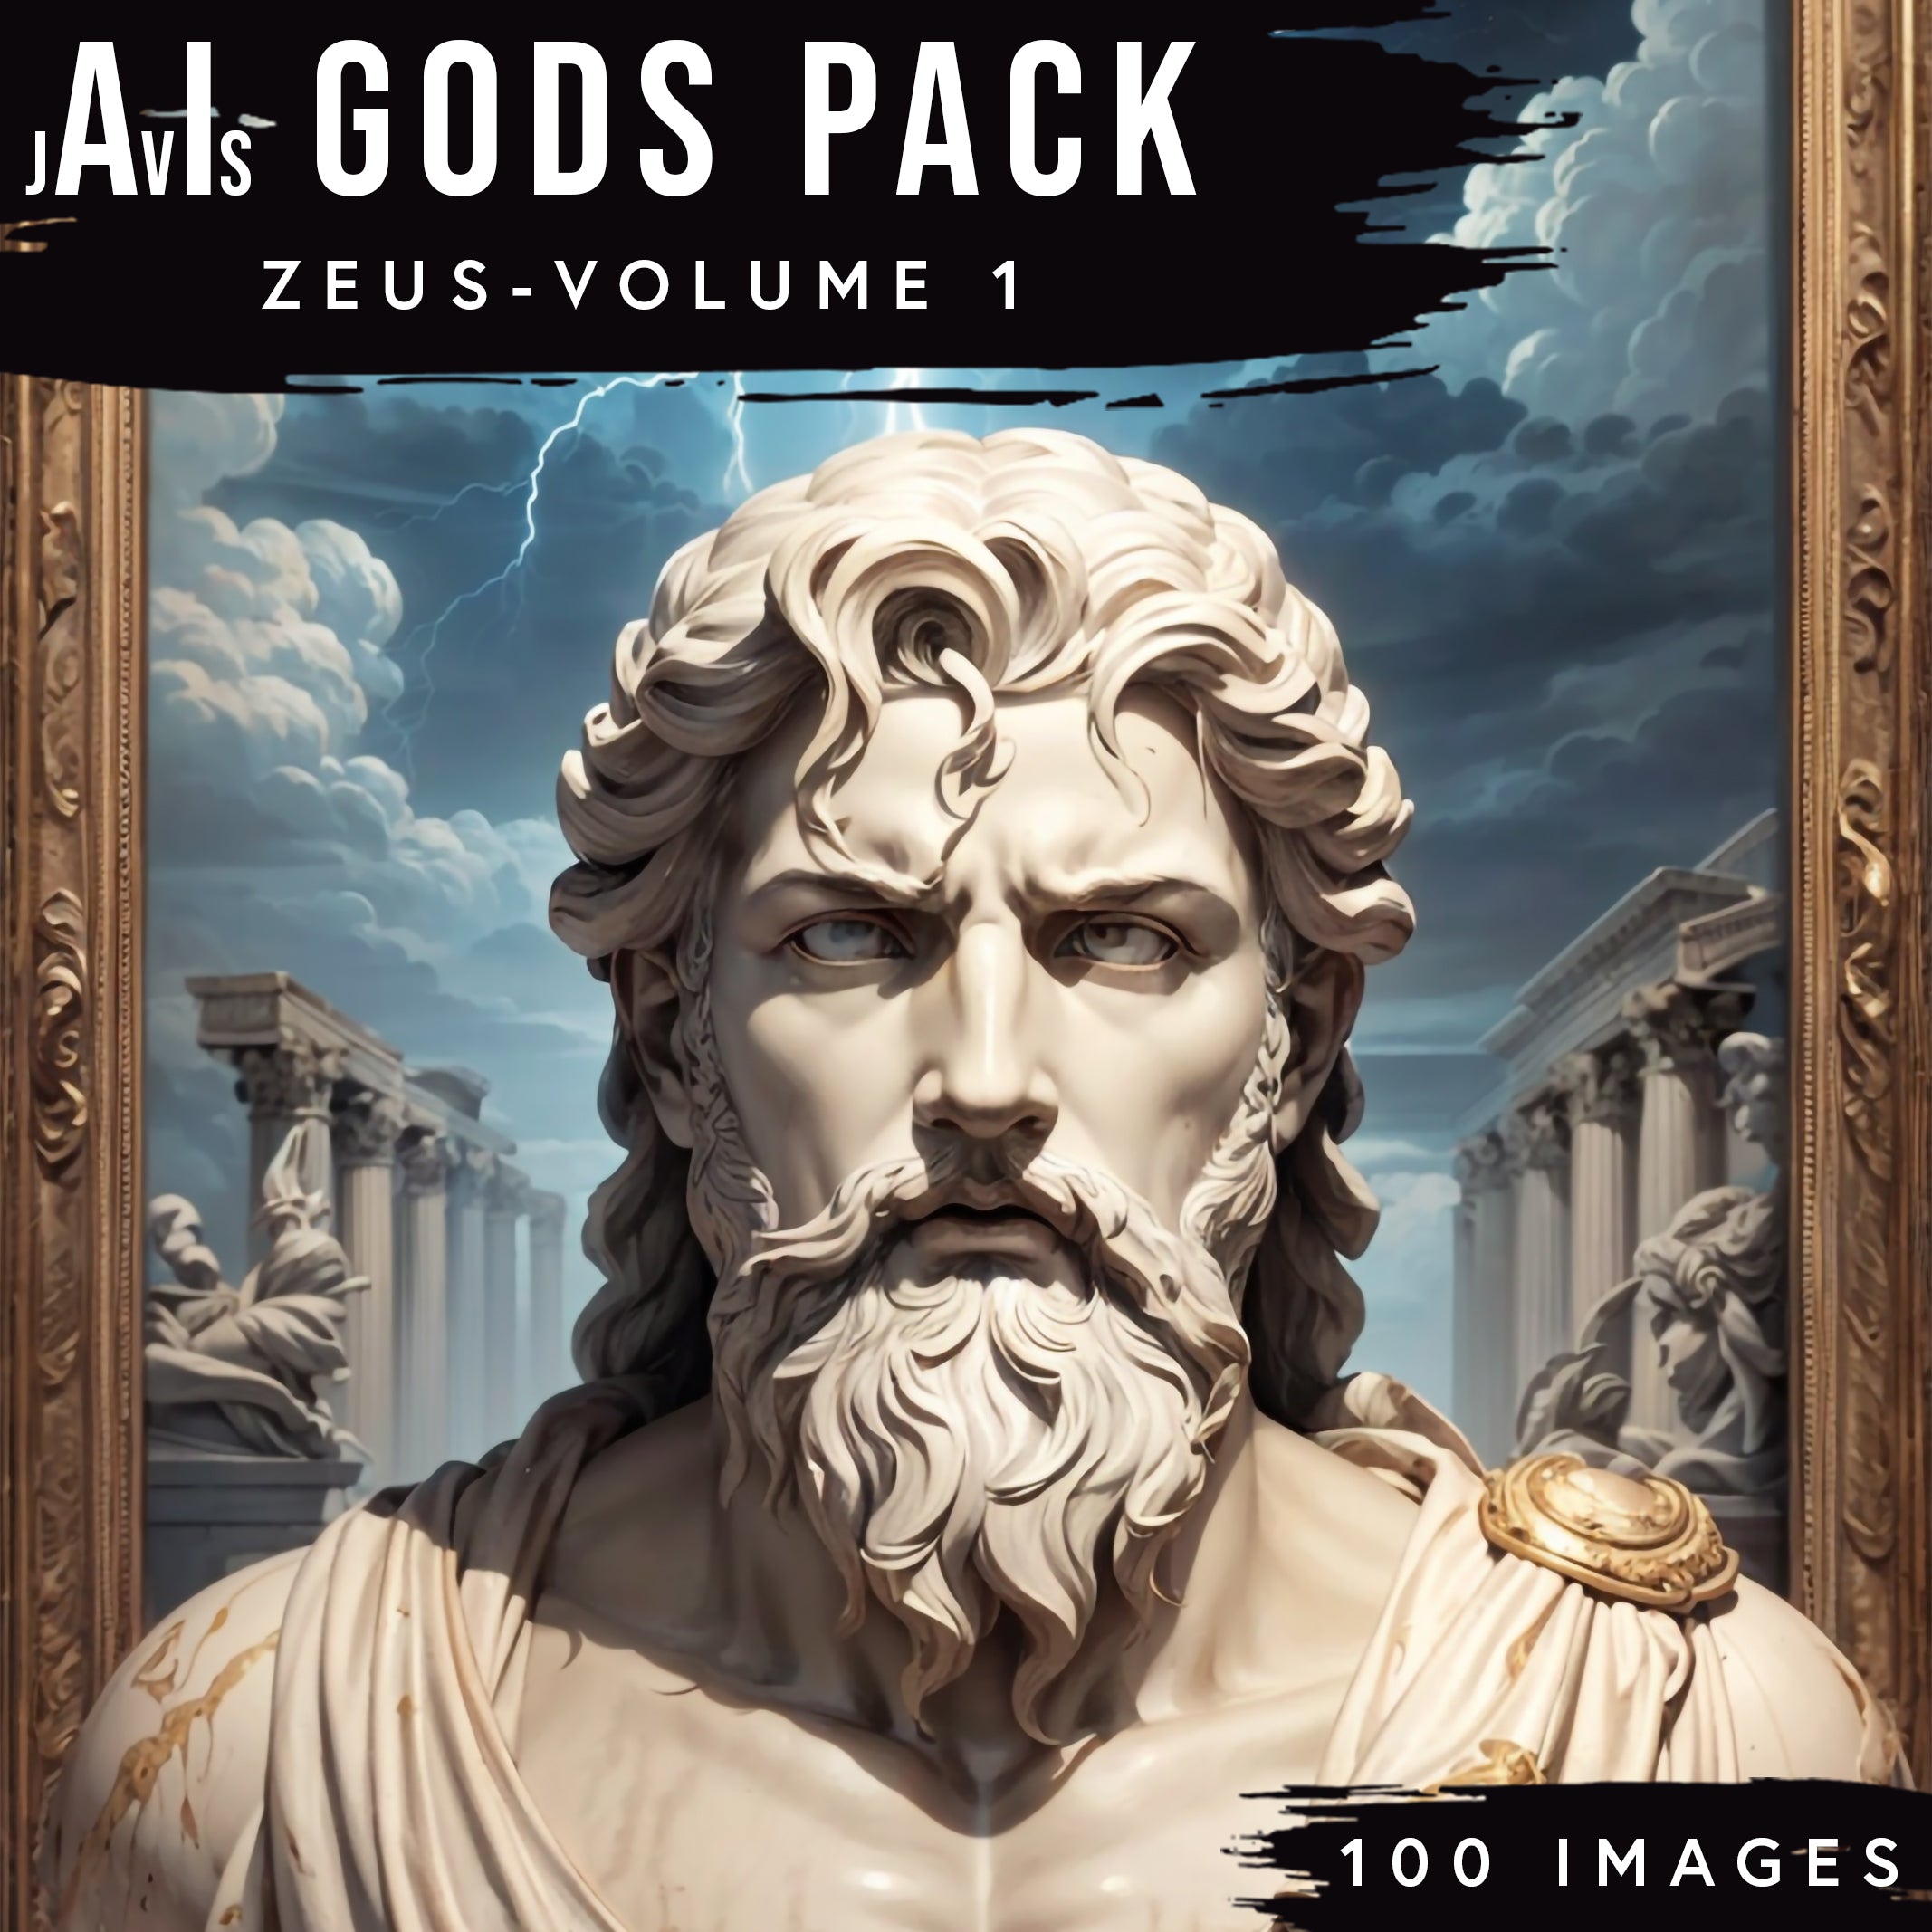 jAvIs Gods Pack - Zeus Volume 1